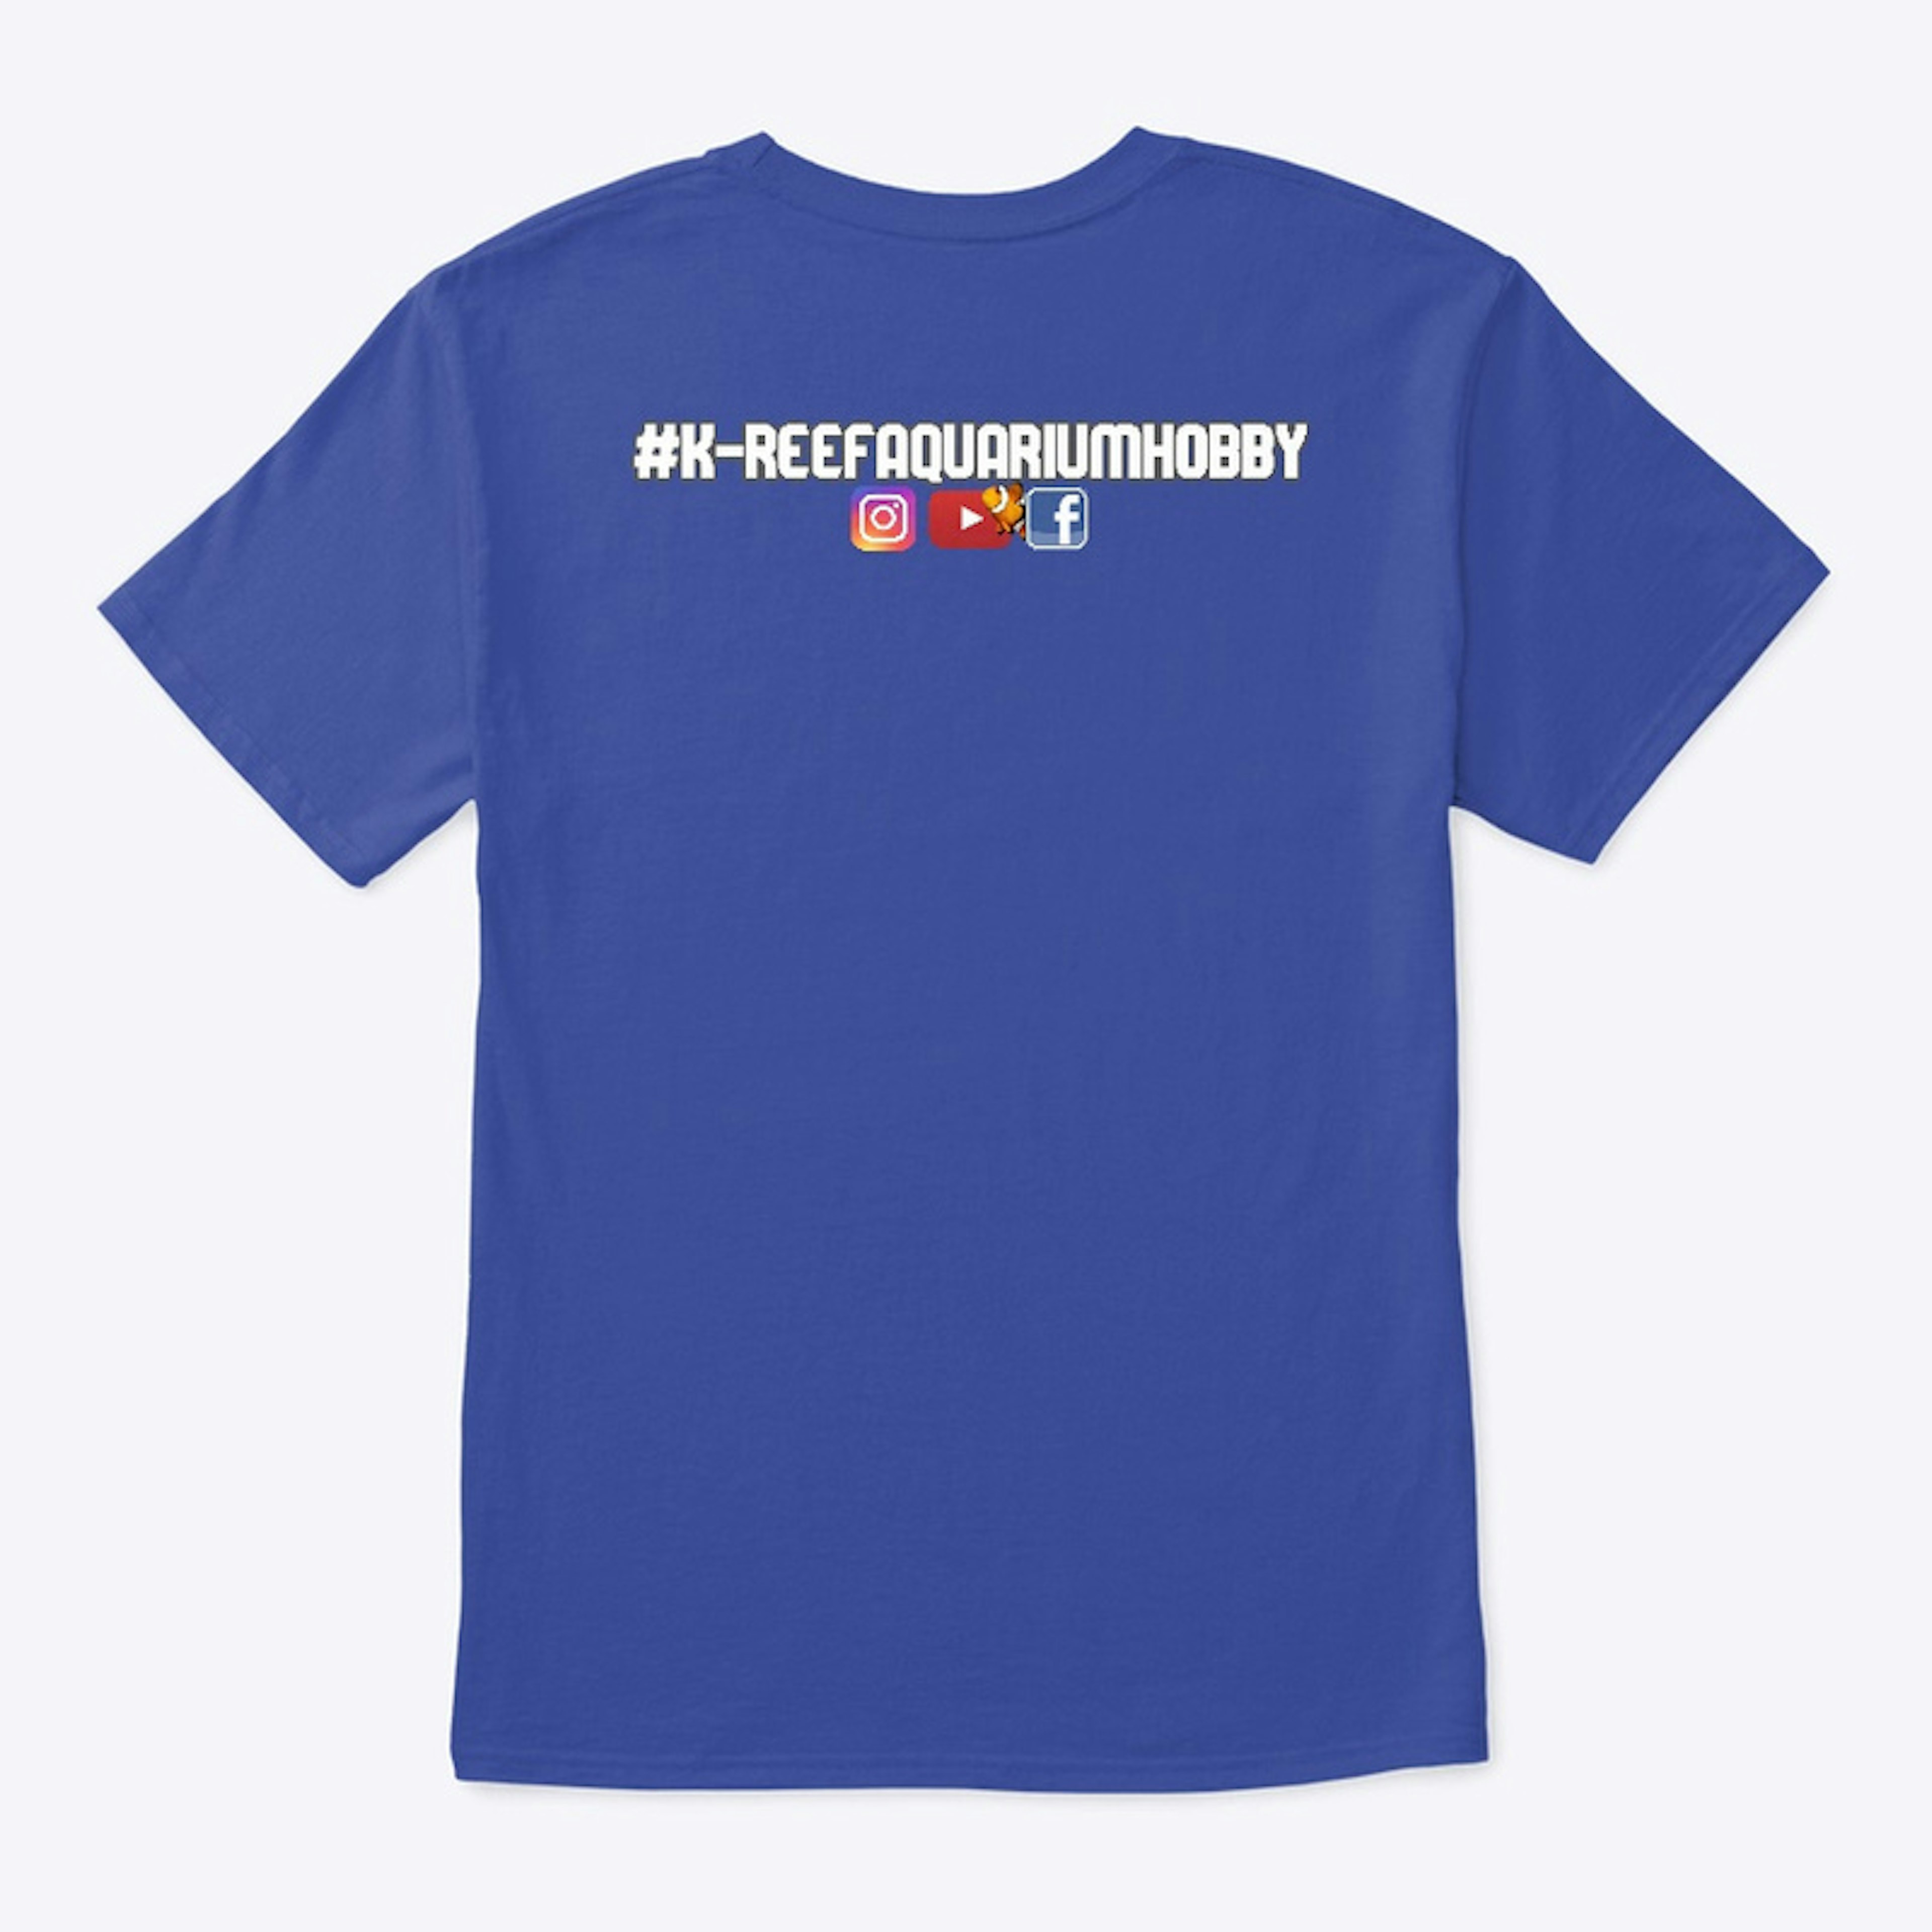 K-Reef T-shirts